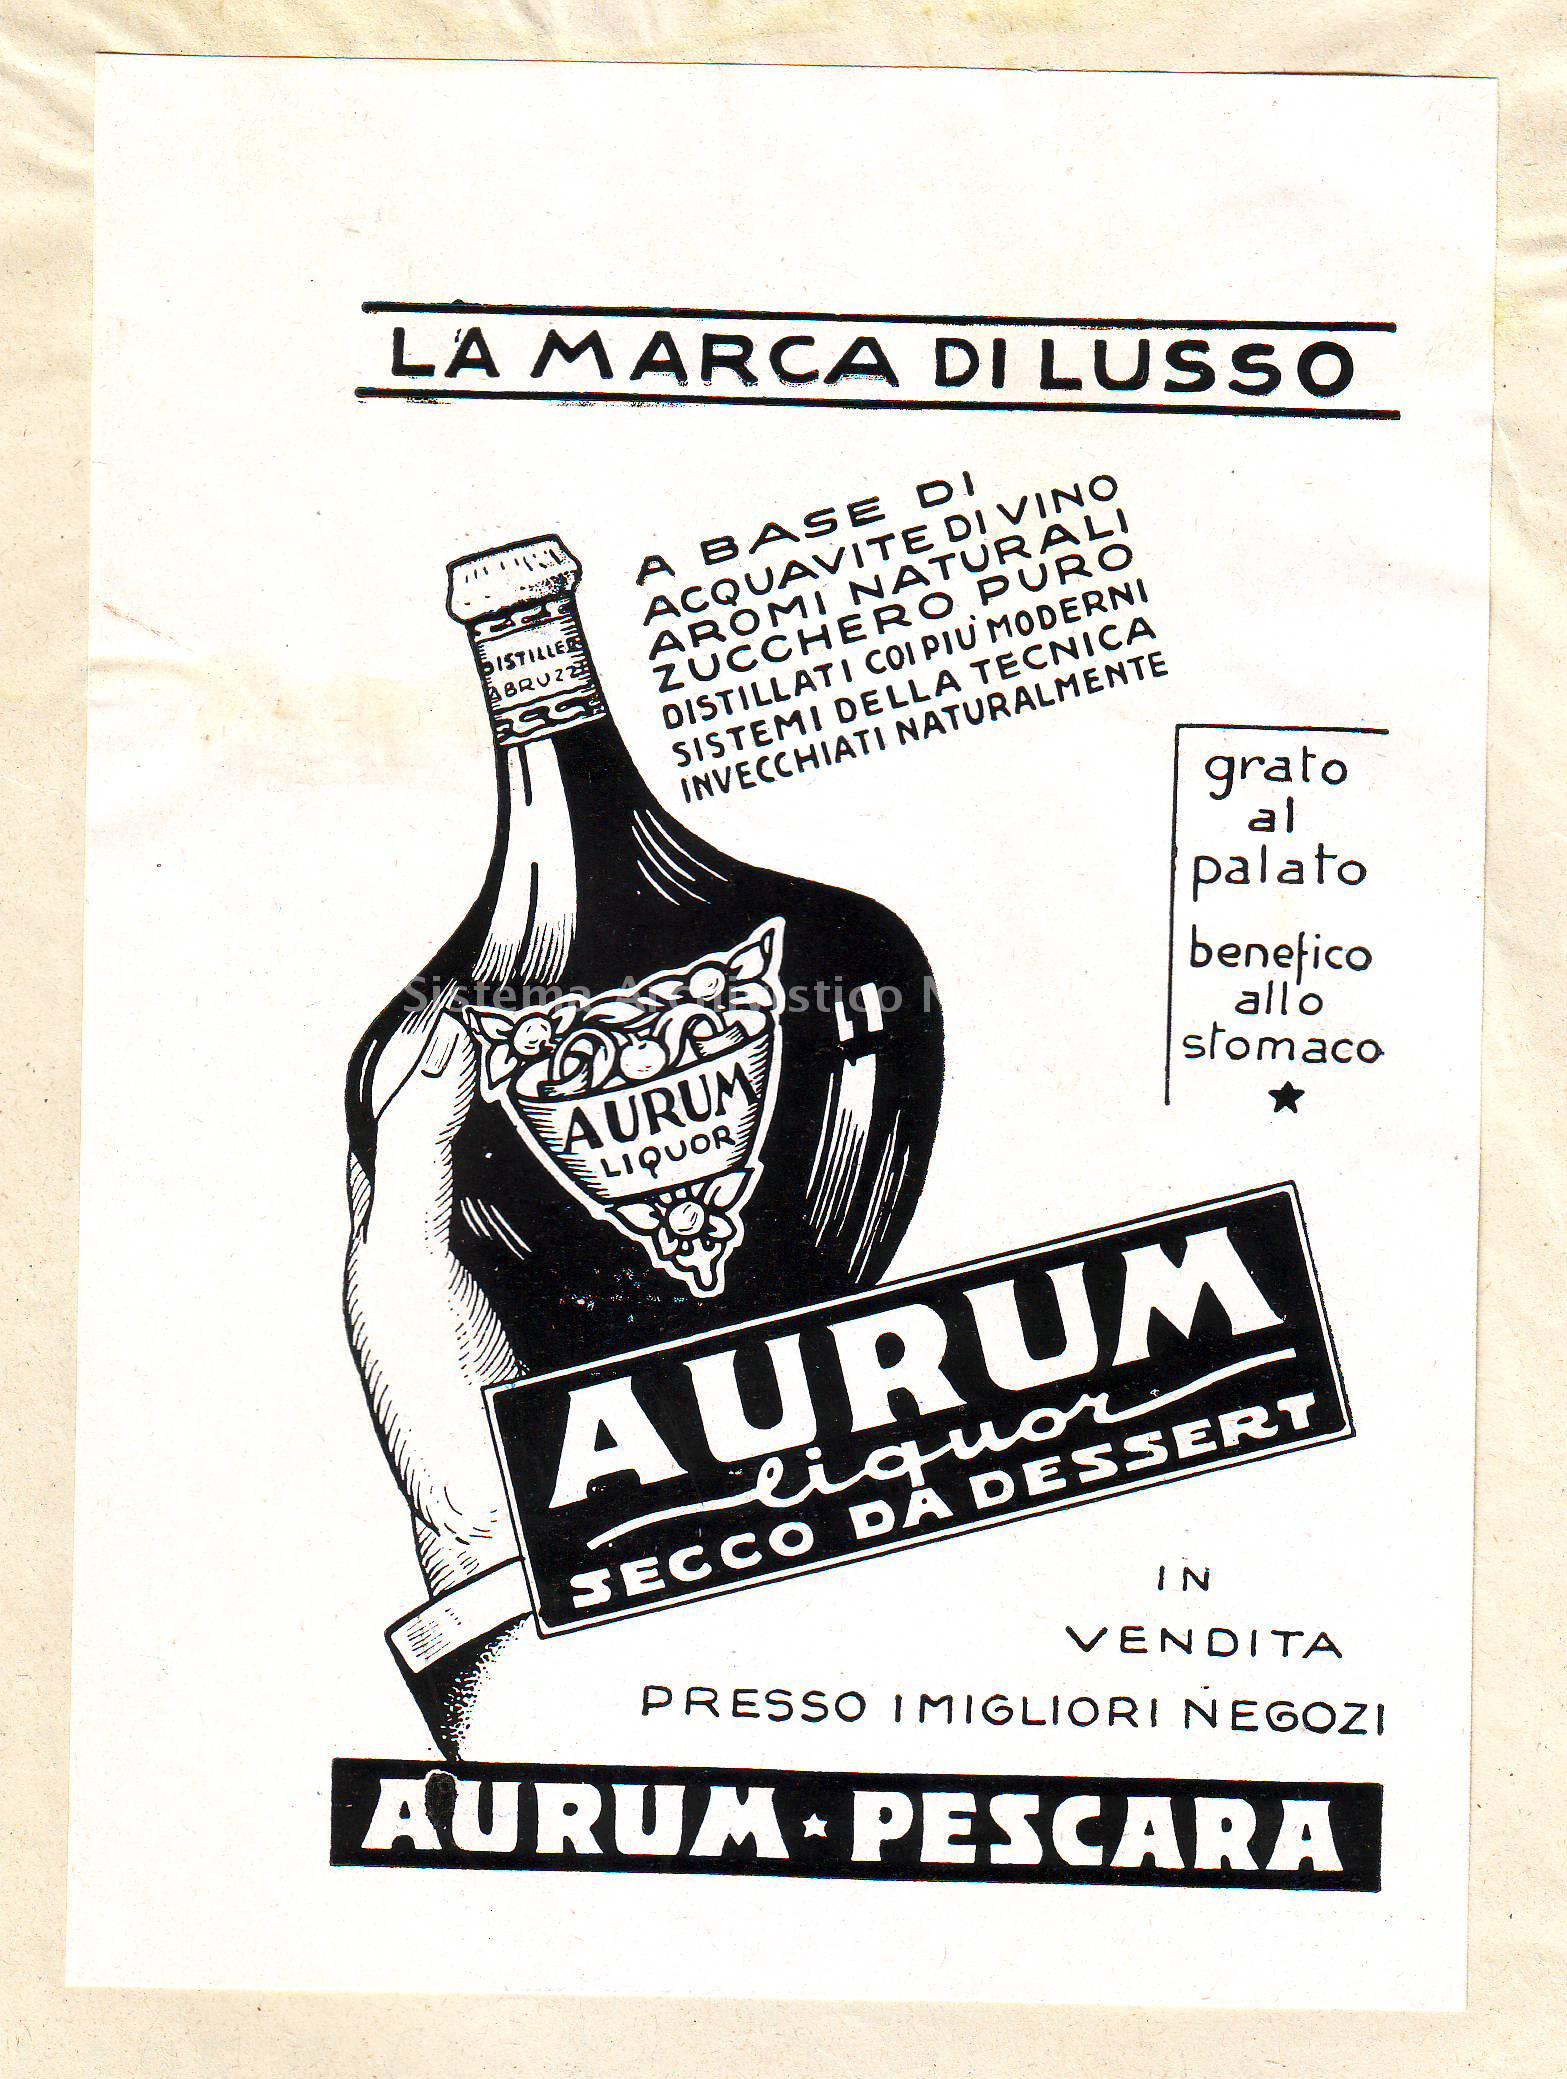   Manifesto pubblicitario del liquore prodotto dalla distilleria Aurum di Pescara, ventesimo secolo (Archivio di Stato di Pescara, Archivio storico Comune di Pescara).
